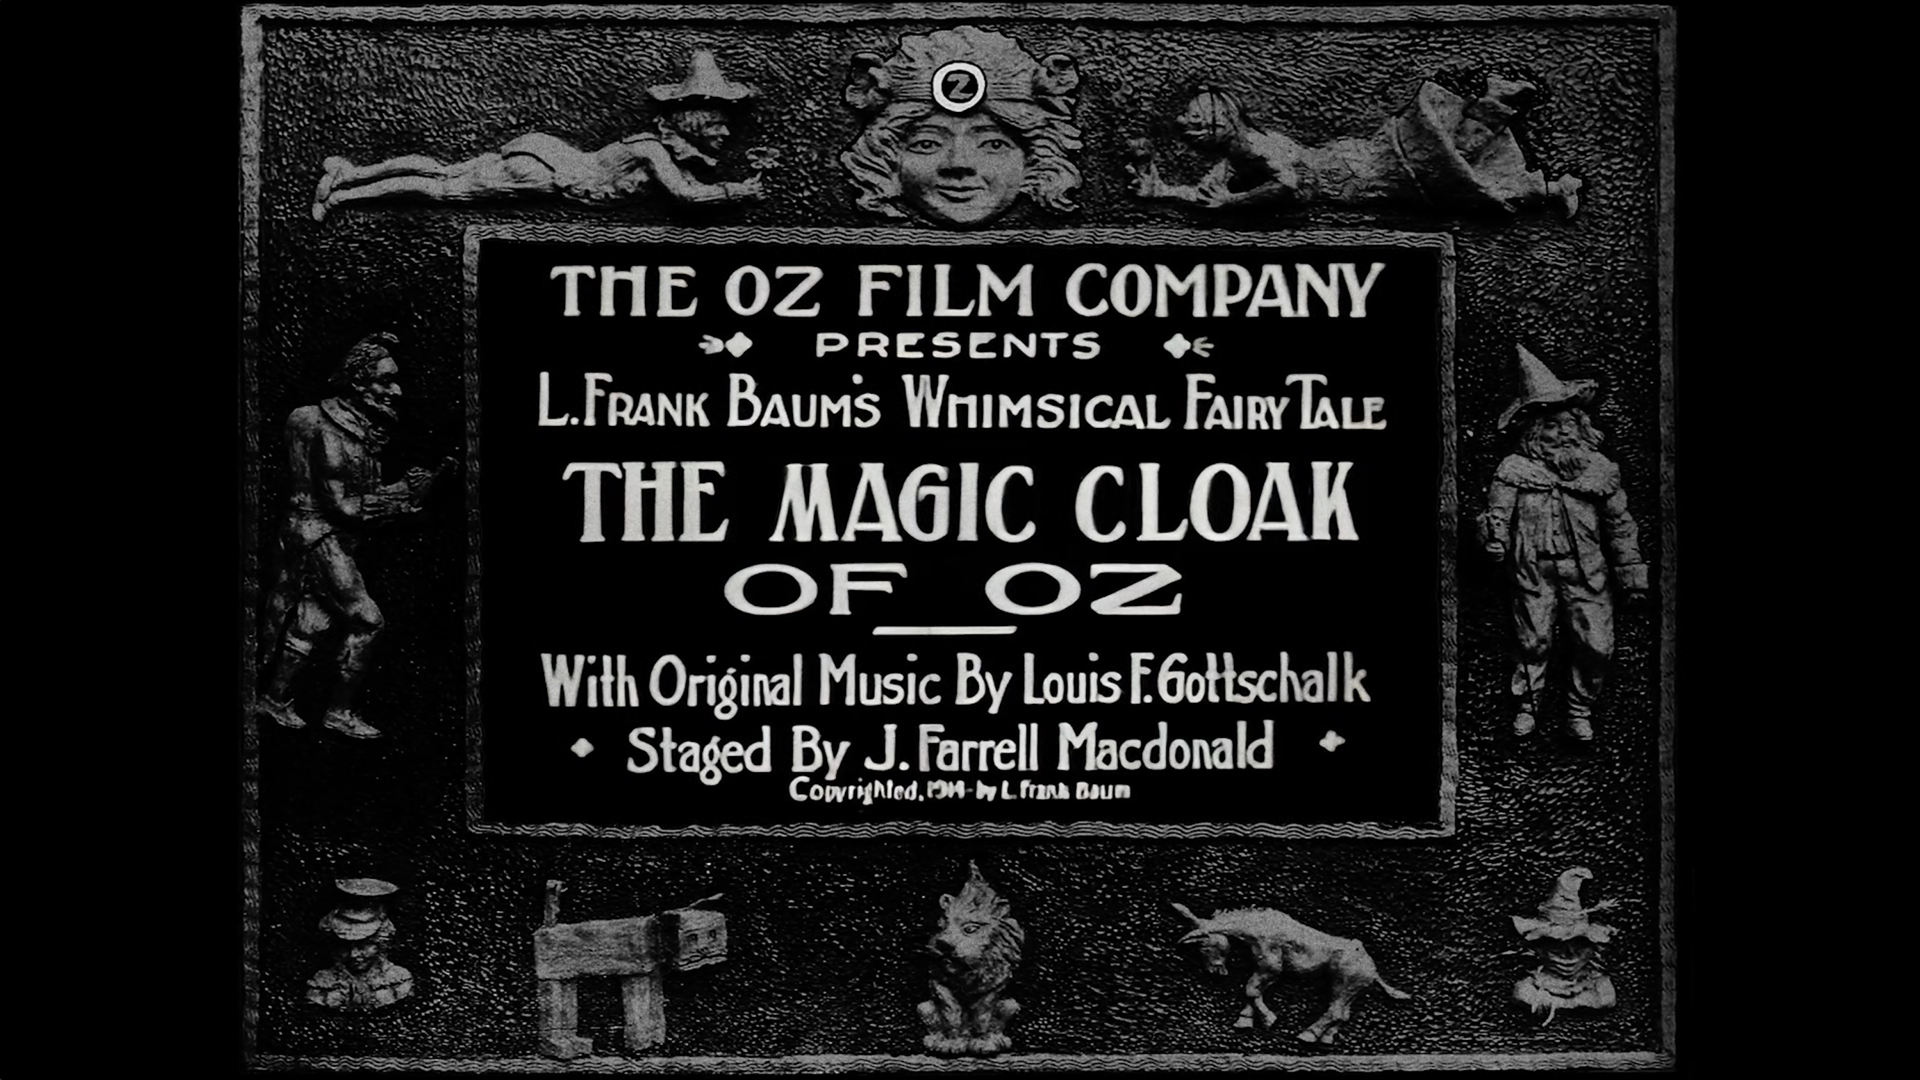 The Magic Cloak of Oz - Proof-of-Concept Restoration